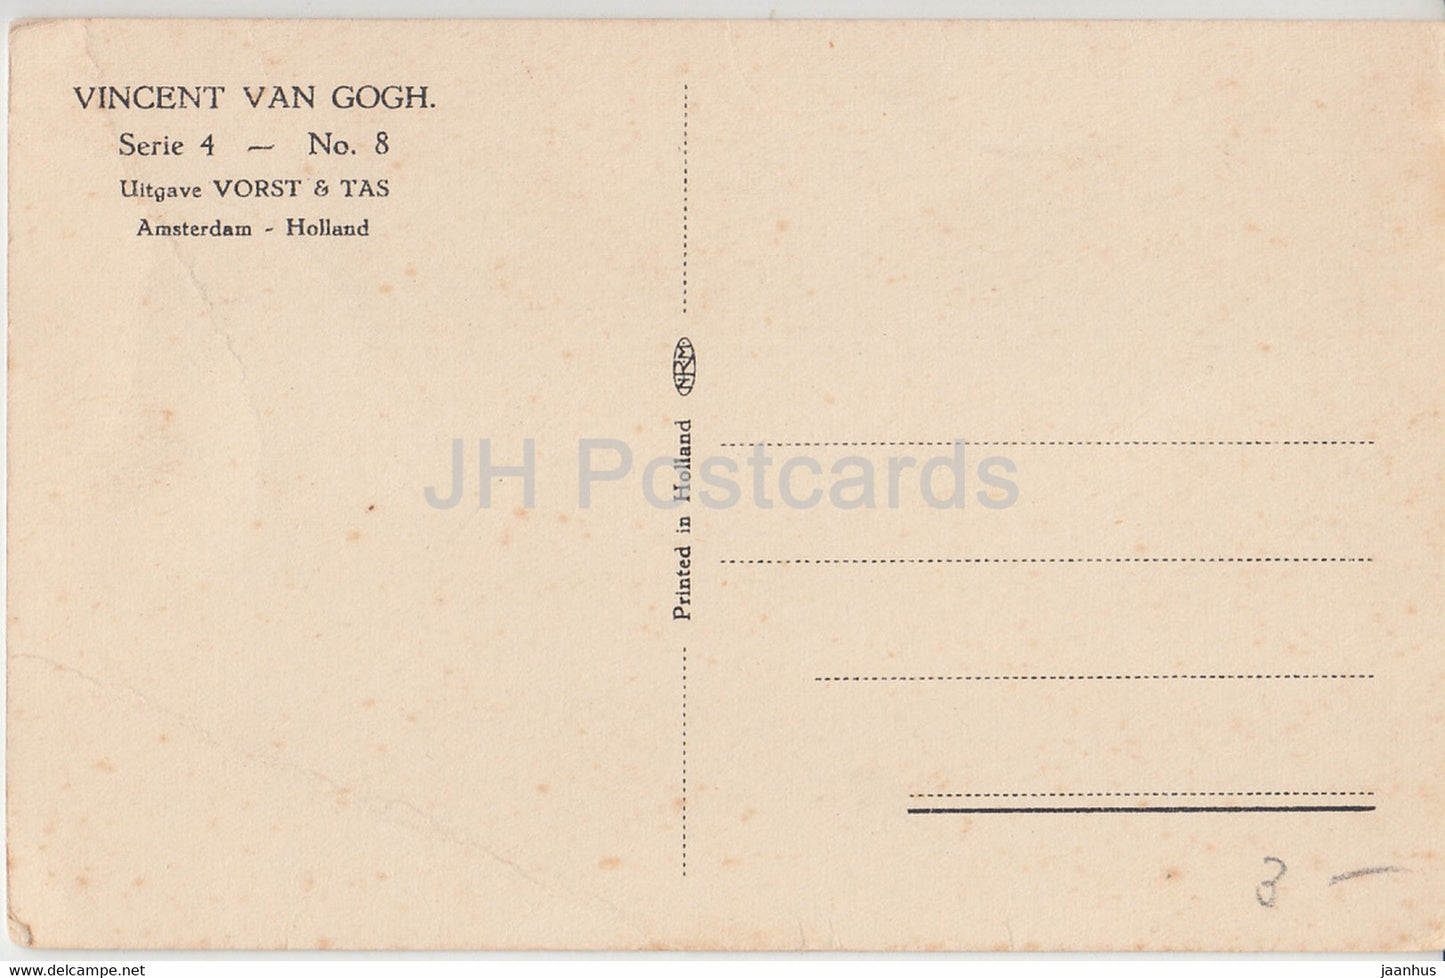 peinture de Vincent van Gogh - Chaise - Série 4 No 8 - Uitgave Vorst &amp; Tas - Art hollandais - carte postale ancienne Pays-Bas inutilisée